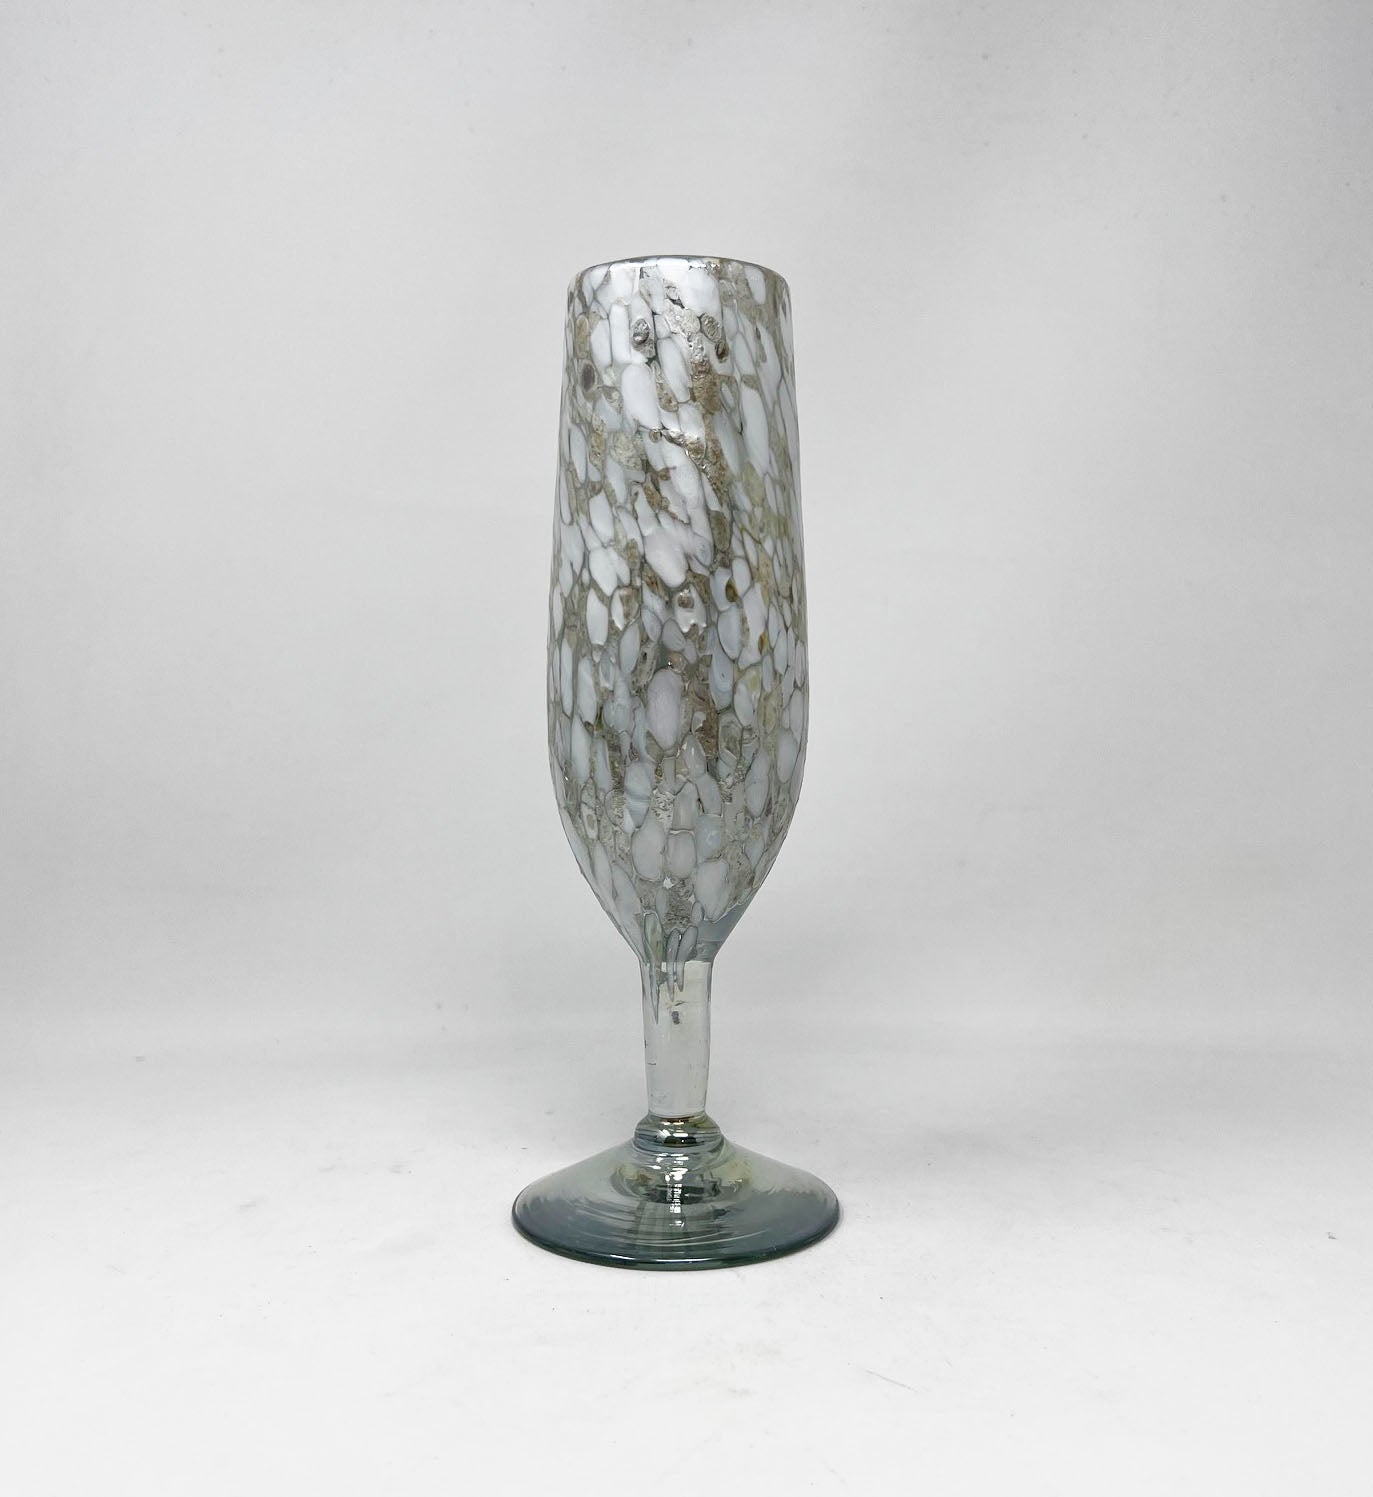 Hand Blown Champagne Glass - White/Tan Confetti